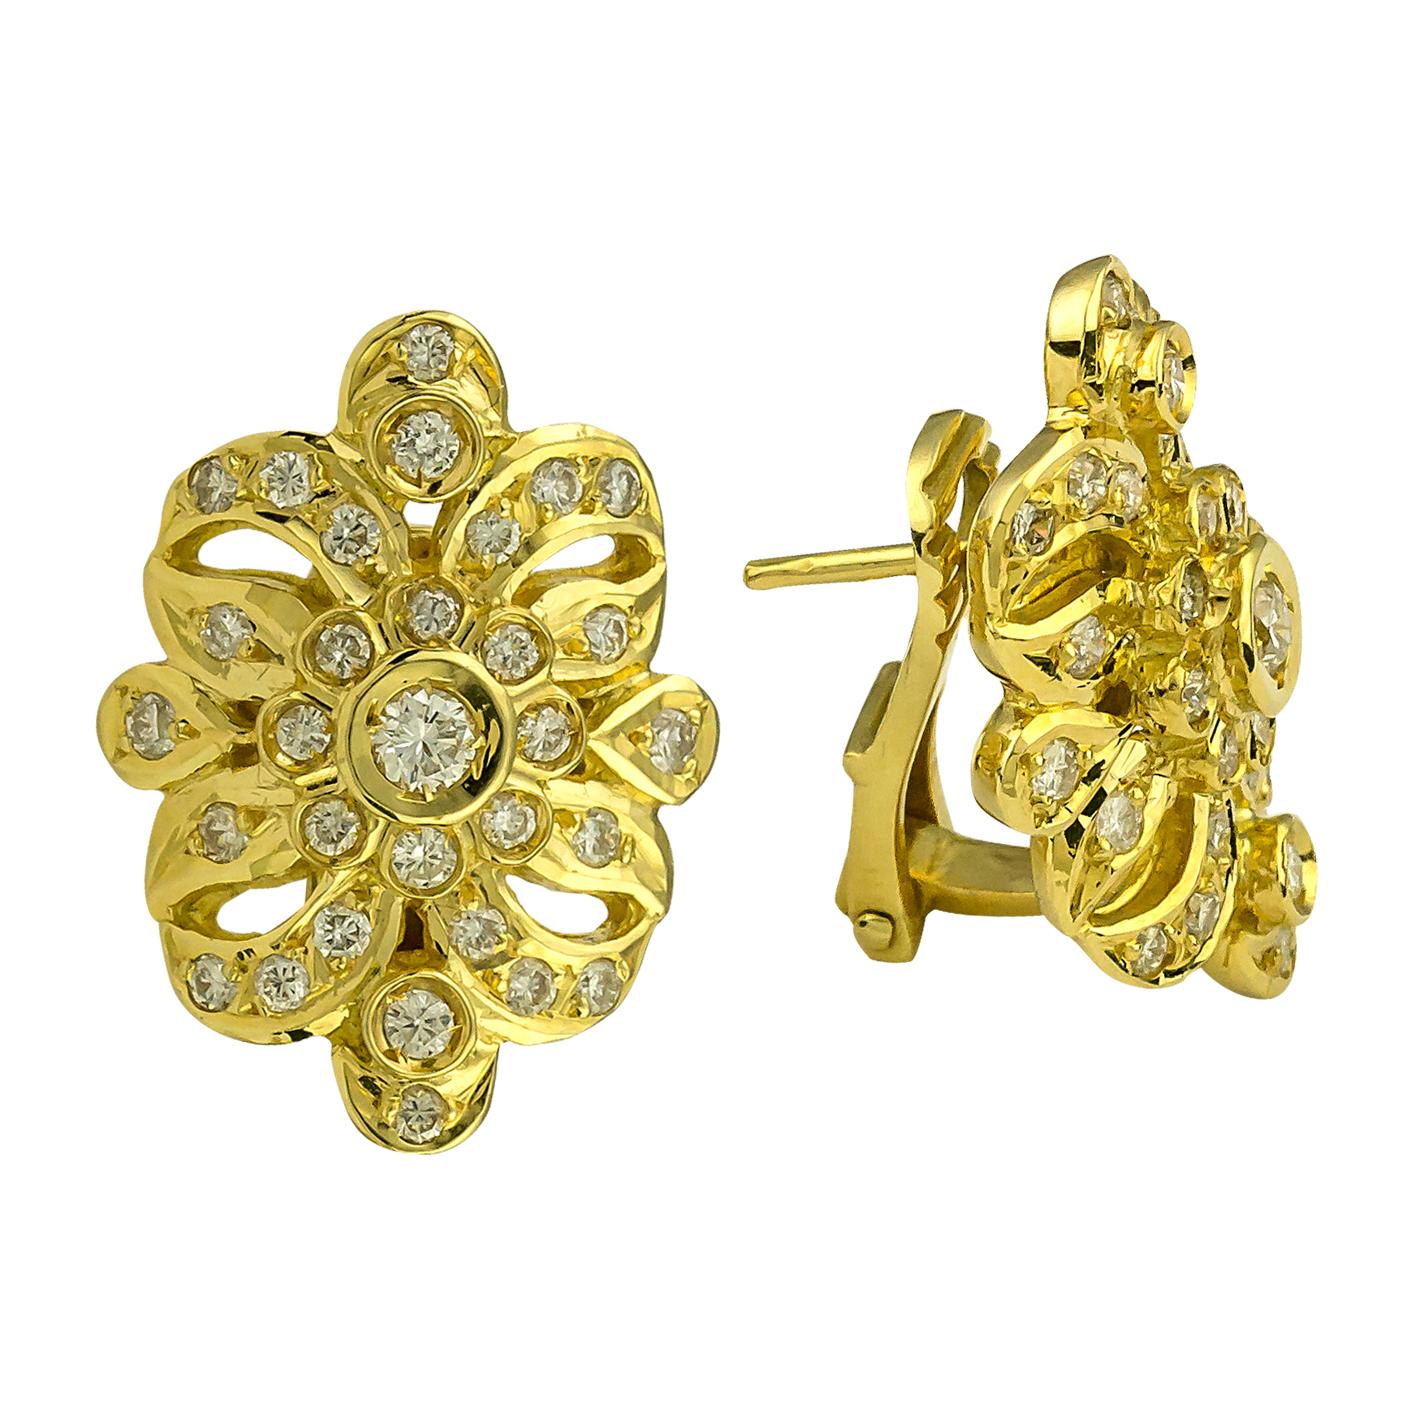 S.Georgios Ohrringe sind handgefertigt aus 18 Karat Gelbgold und sind mit byzantinischen Stil Verarbeitung verziert und verfügen über Brillantschliff Diamanten Gesamtgewicht von 1,14 Karat. Dieses einzigartige Paar Ohrringe kann auch als reiner Clip